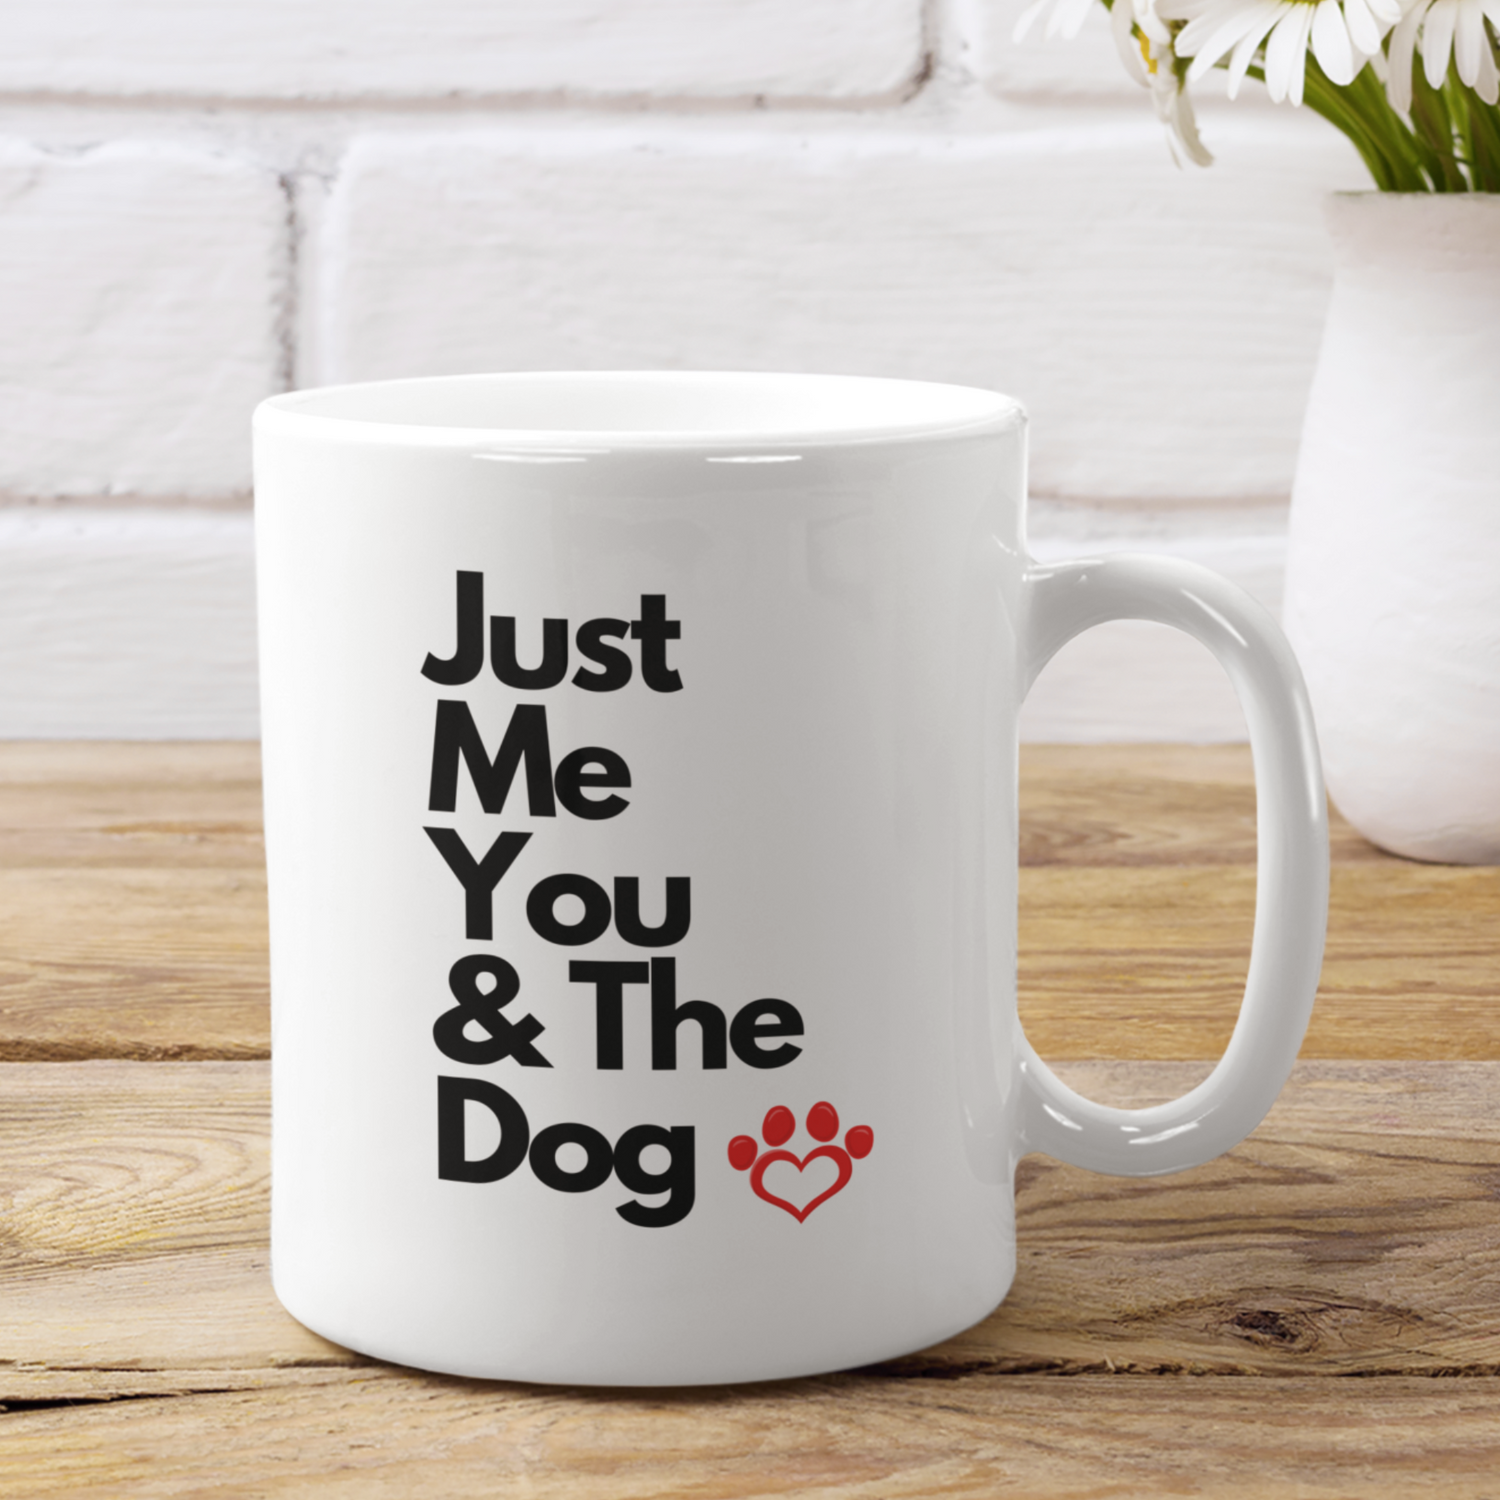 Just Me, You & The Dog Mug - Dog owners Mug